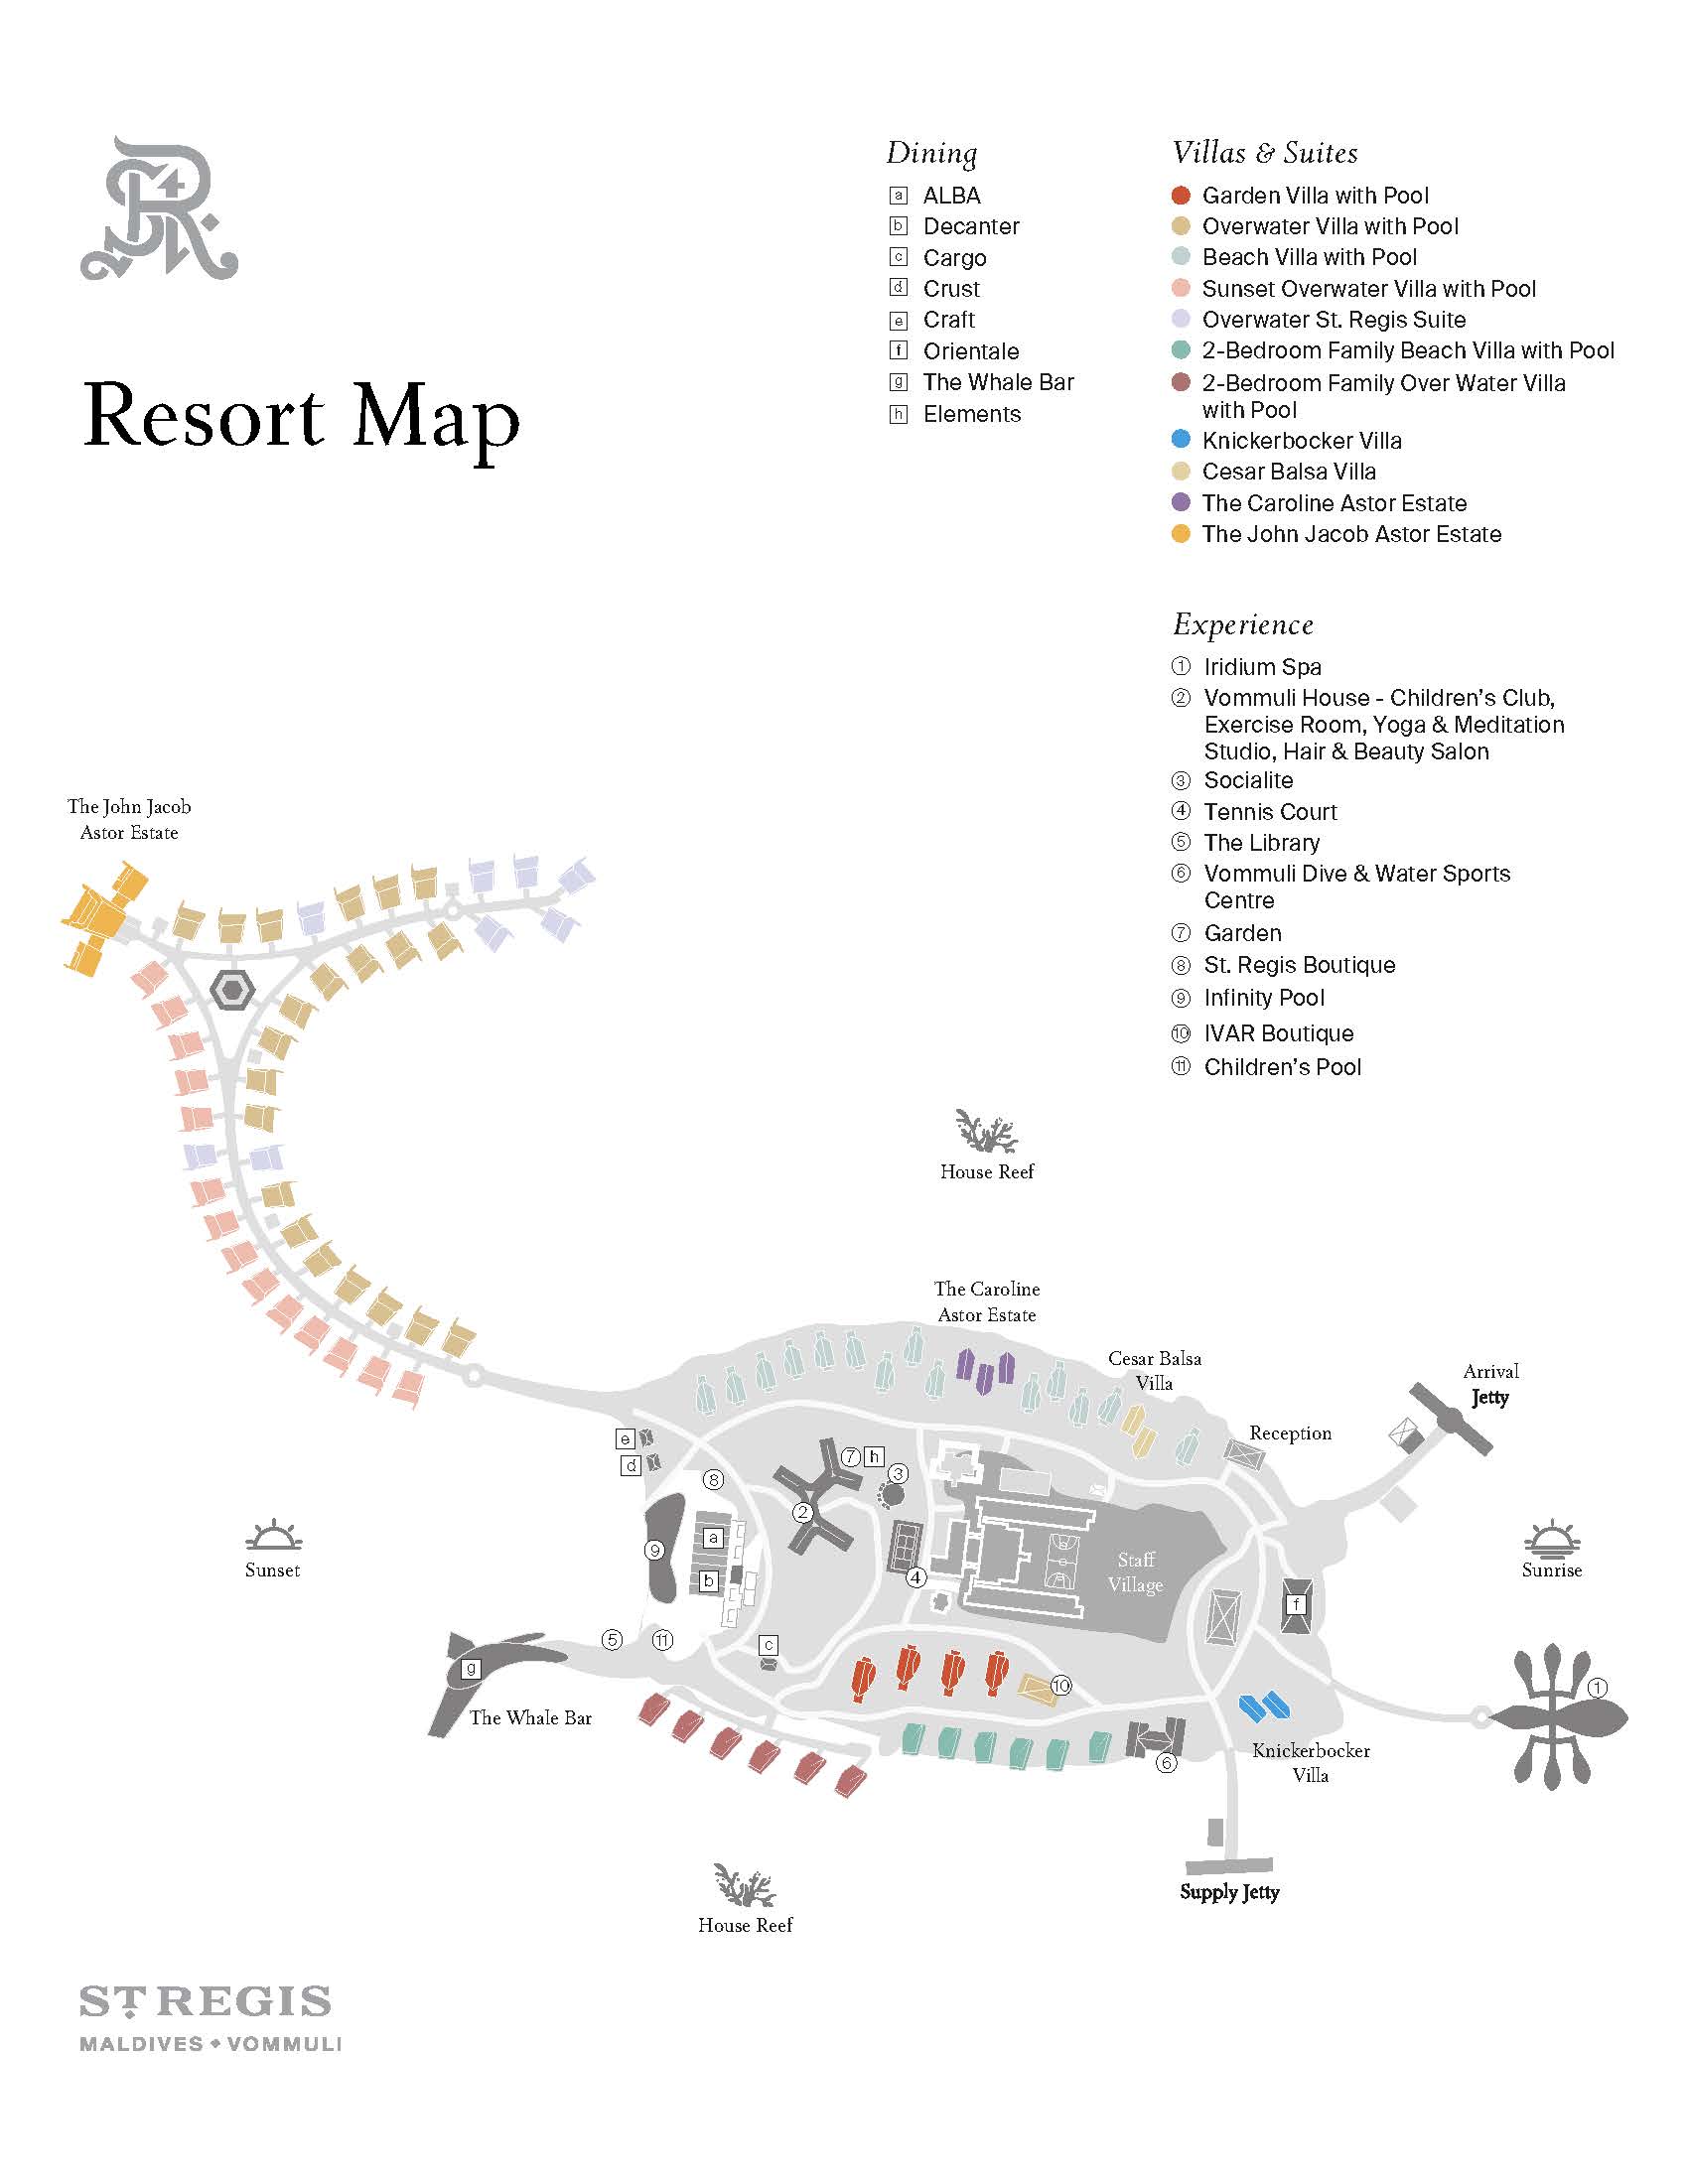 The St. Regis Maldives Vommuli Resort Map